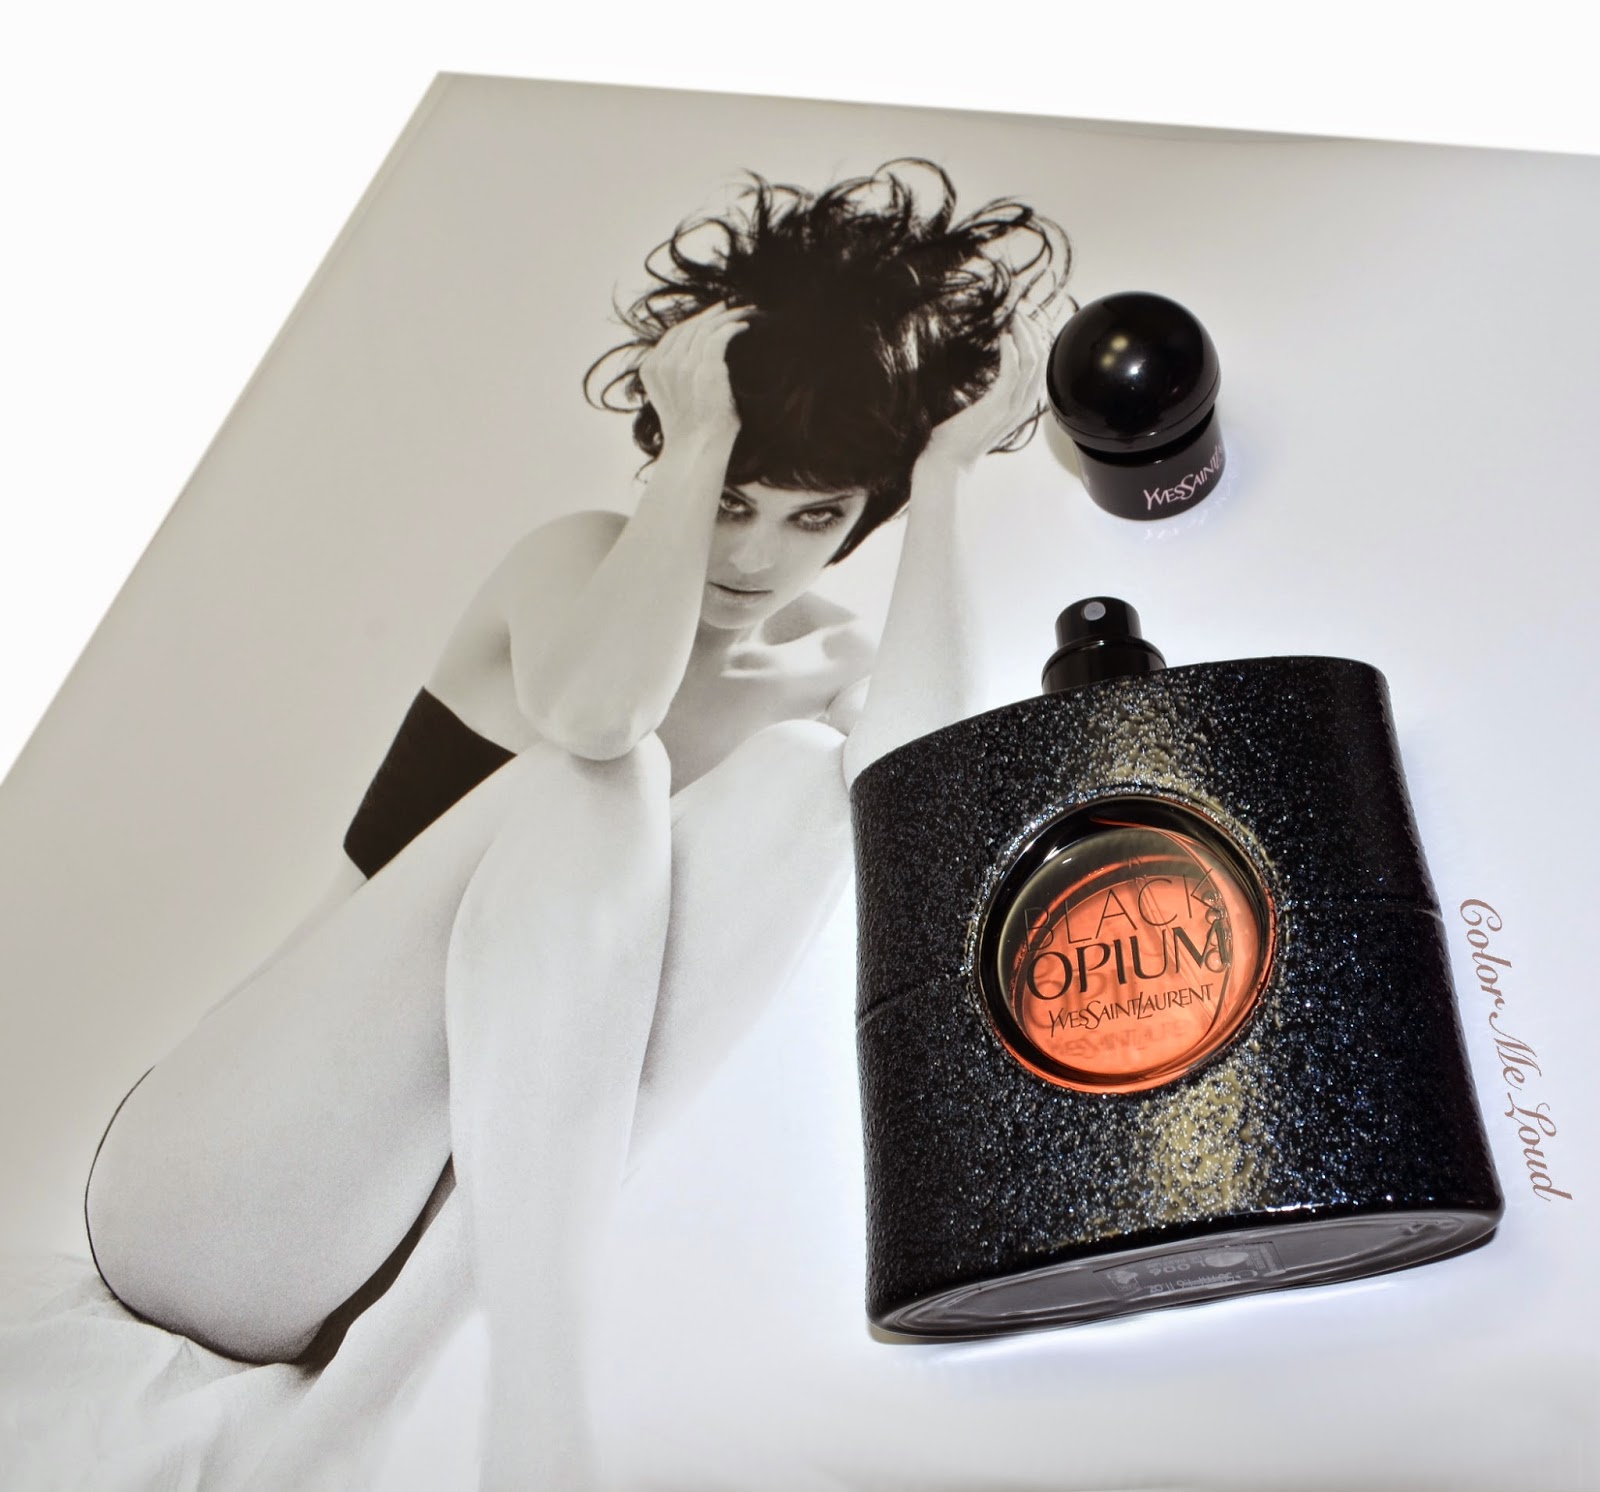 YSL: Black Opium Eau de Parfum